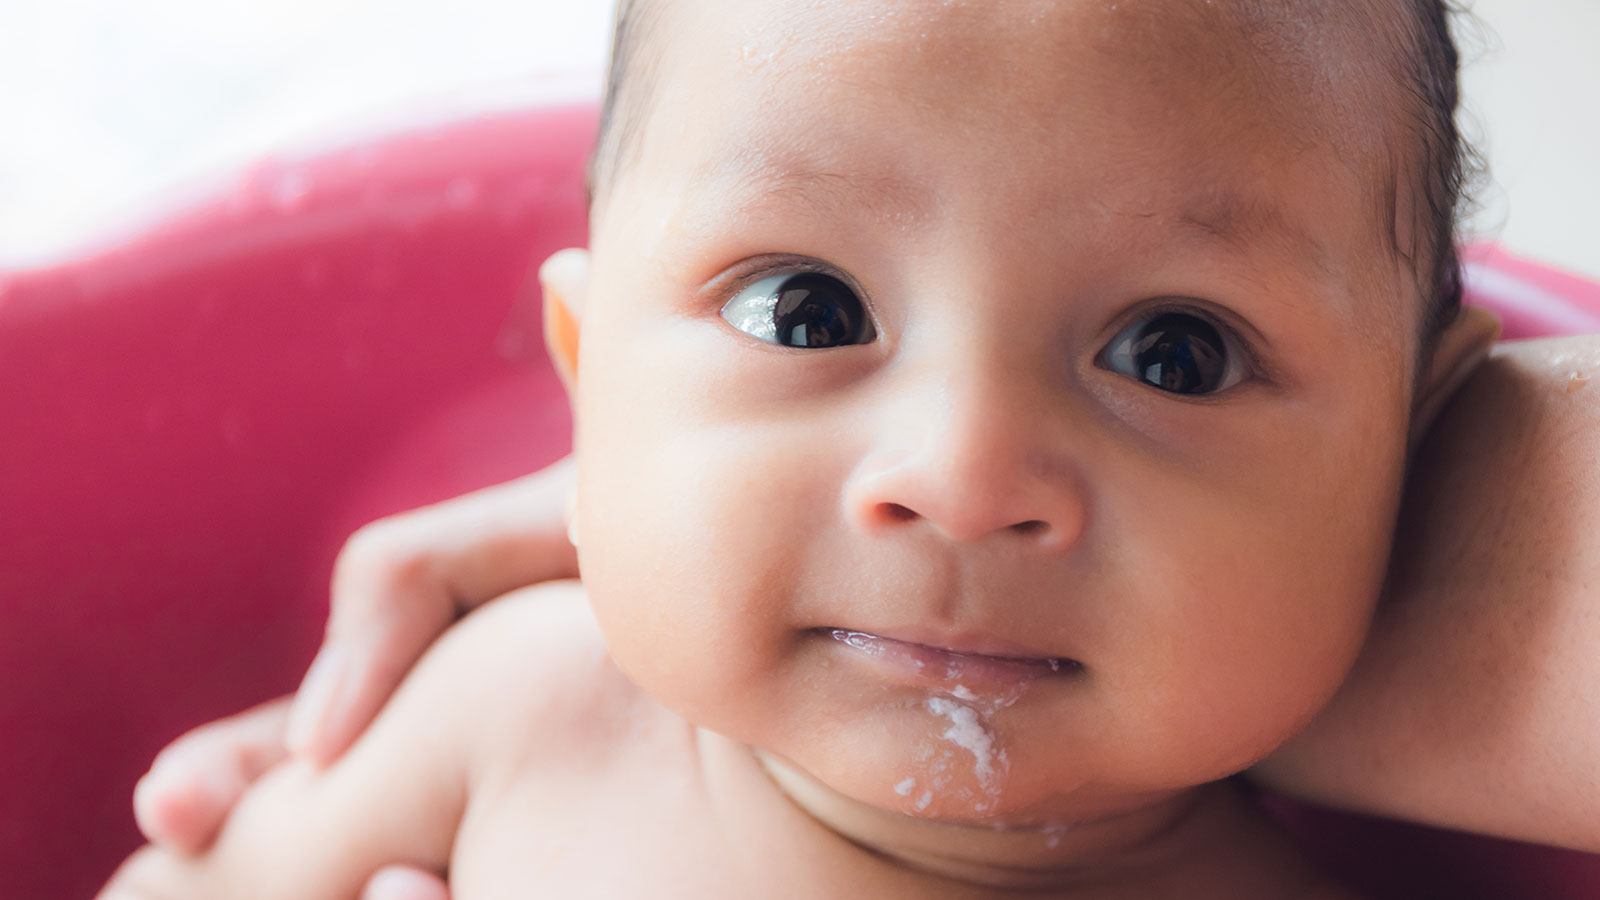 Bebê com refluxo gastroesofágico infantil vomitando depois de um banho